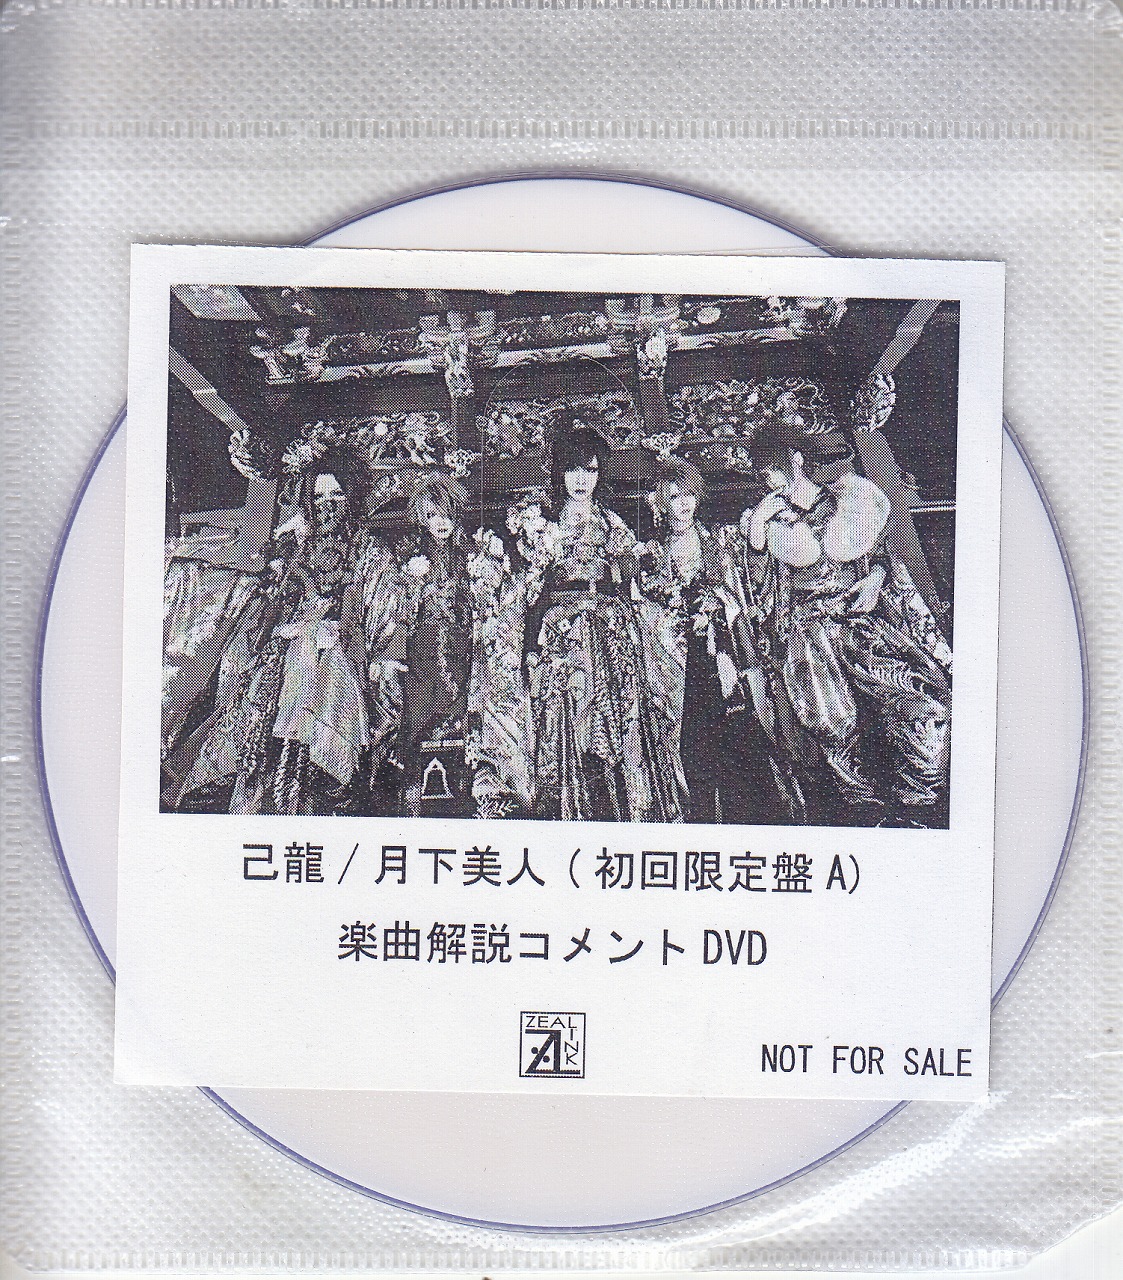 キリュウ の DVD 【ZEAL LINK】月下美人（初回限定盤A）楽曲解説コメントDVD